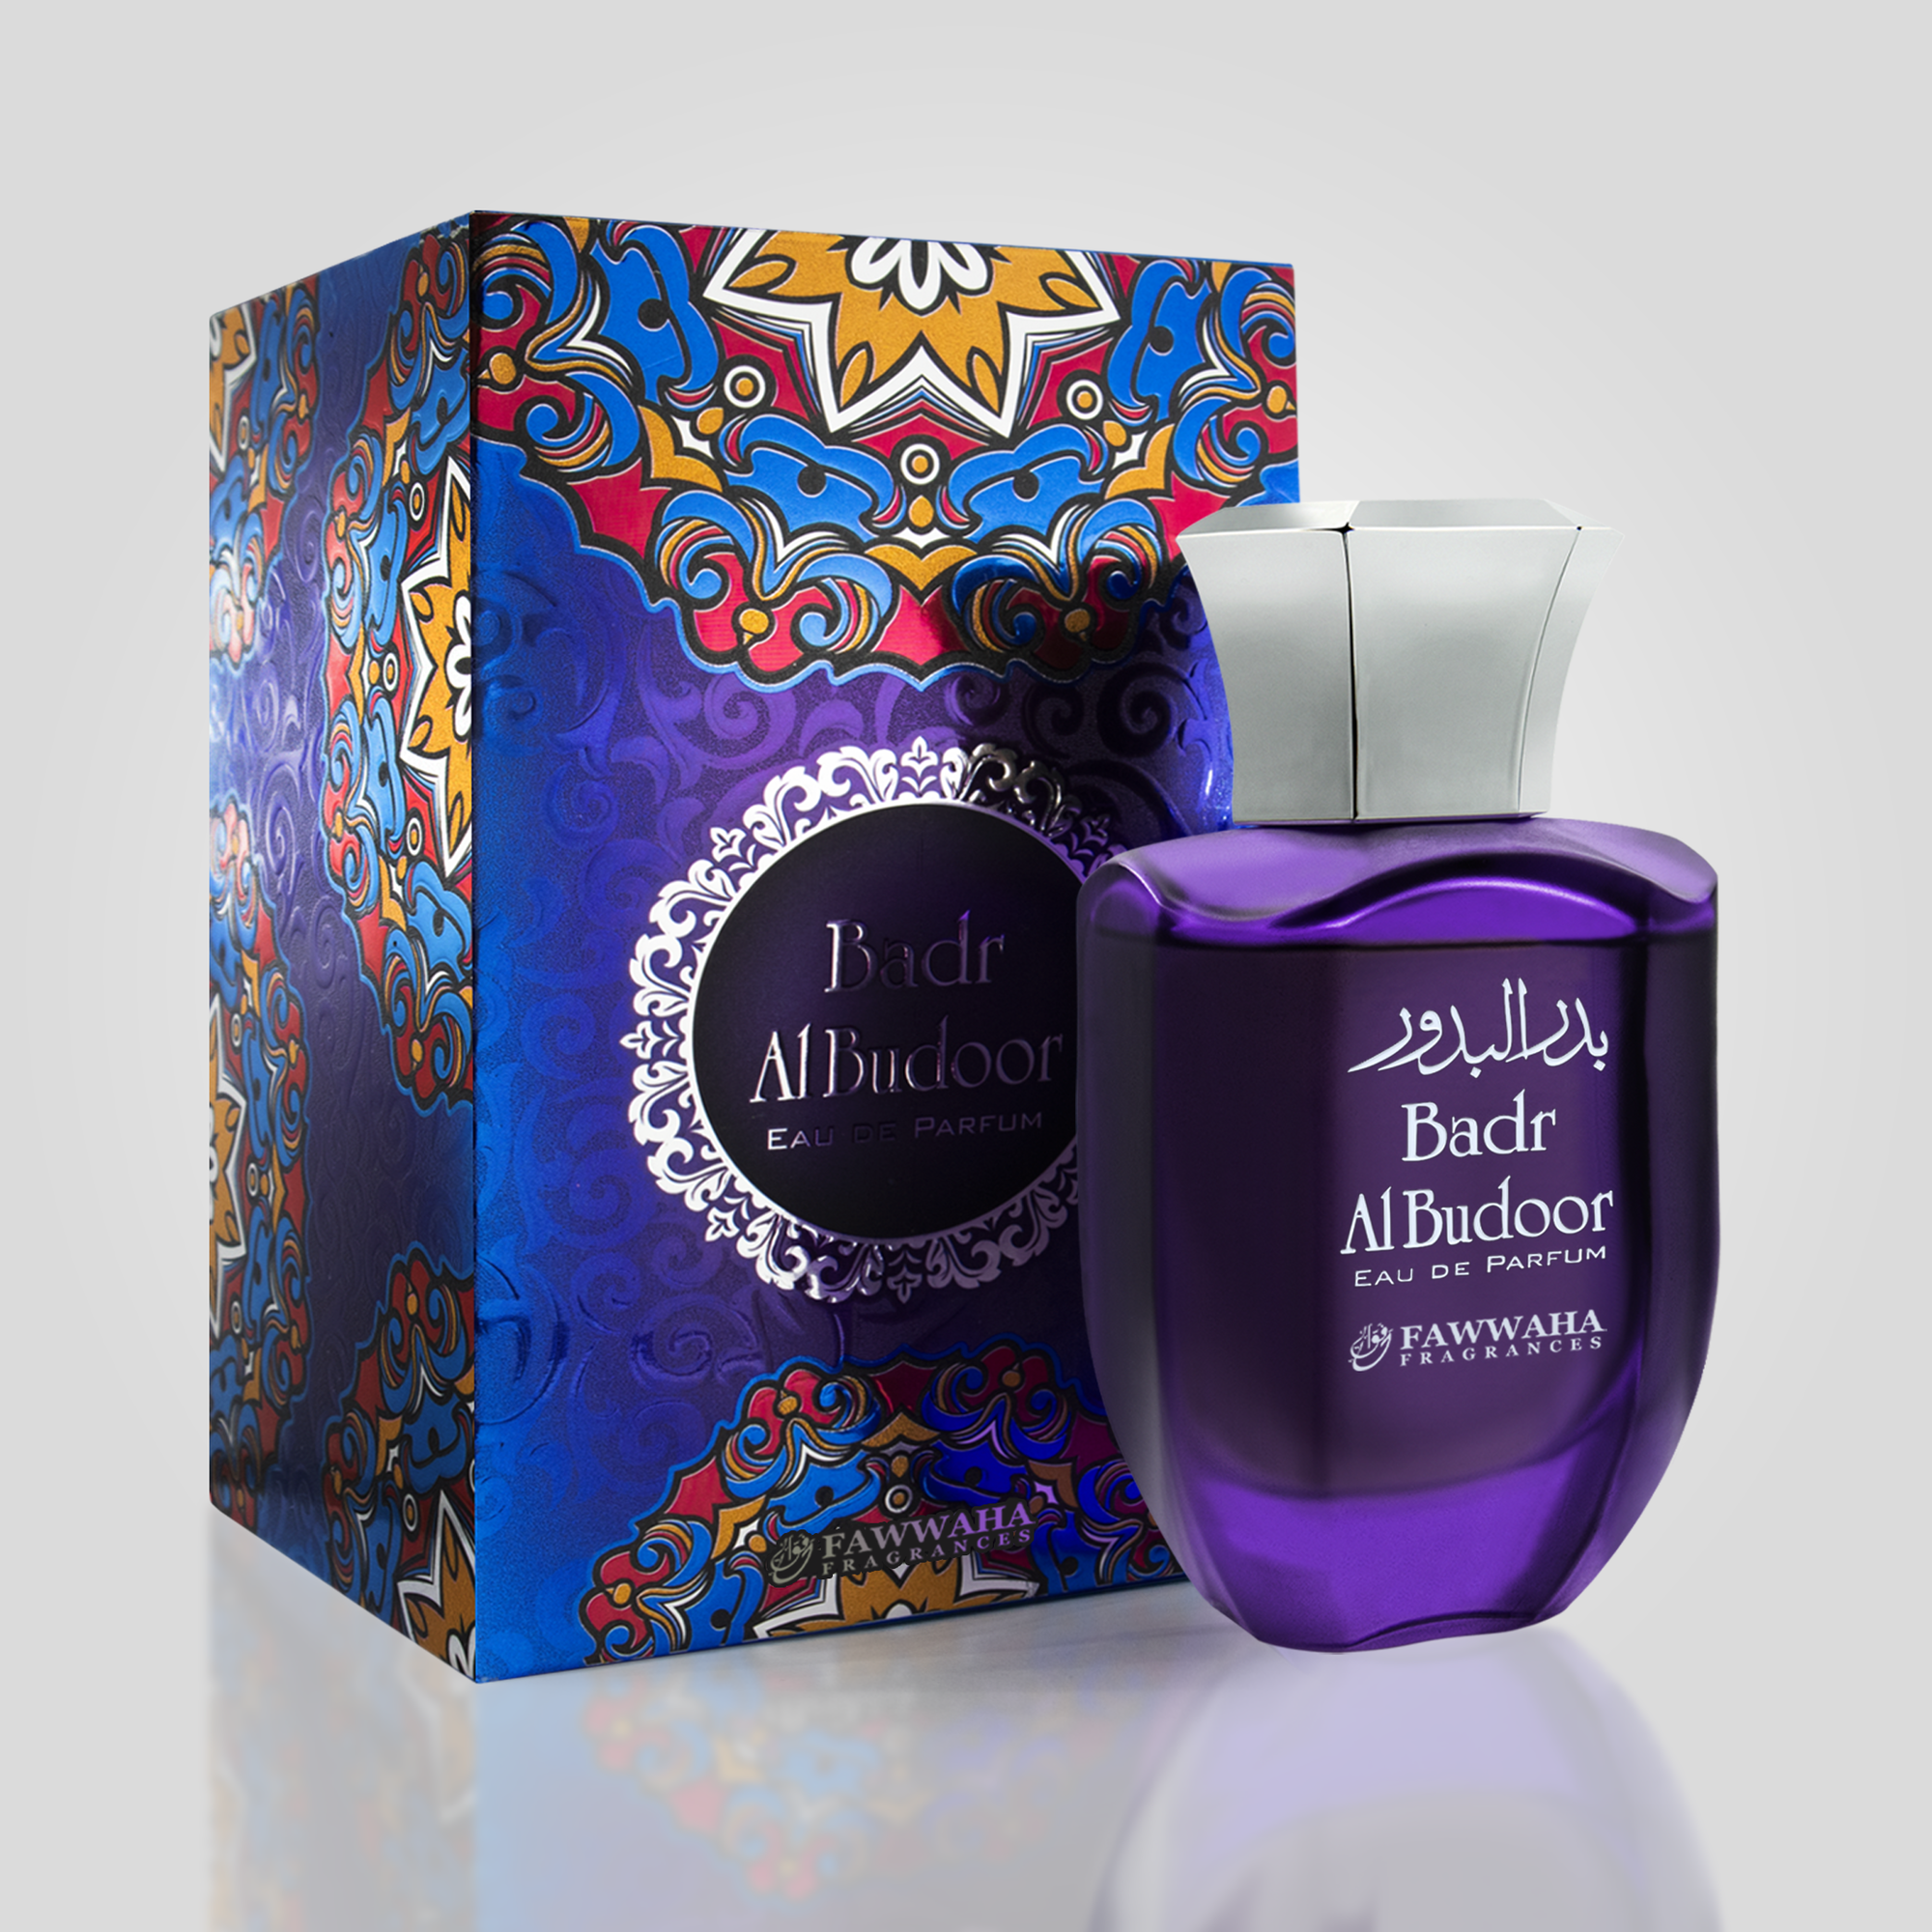 Badr-Al-Budoor Arabic Perfume 100 ml